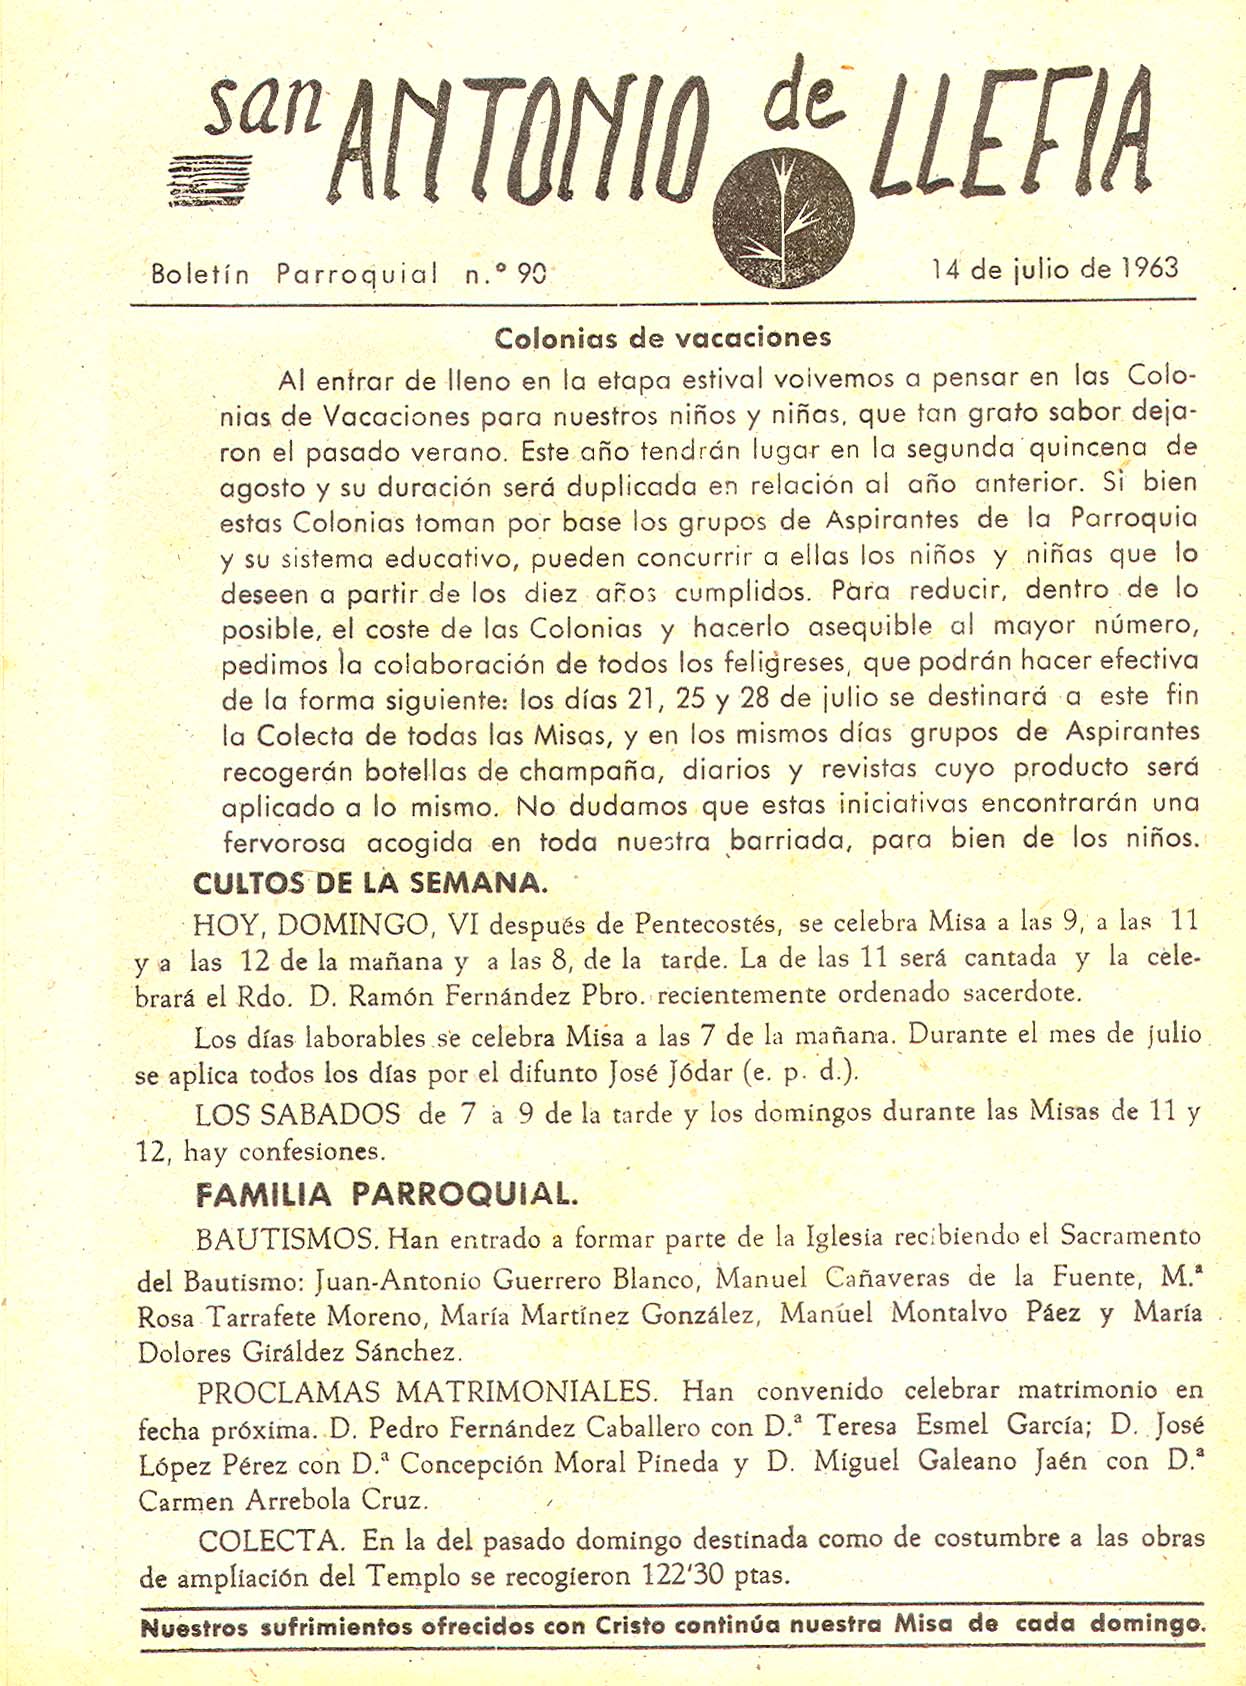 1963 Boletin parroquial nÃºm 90